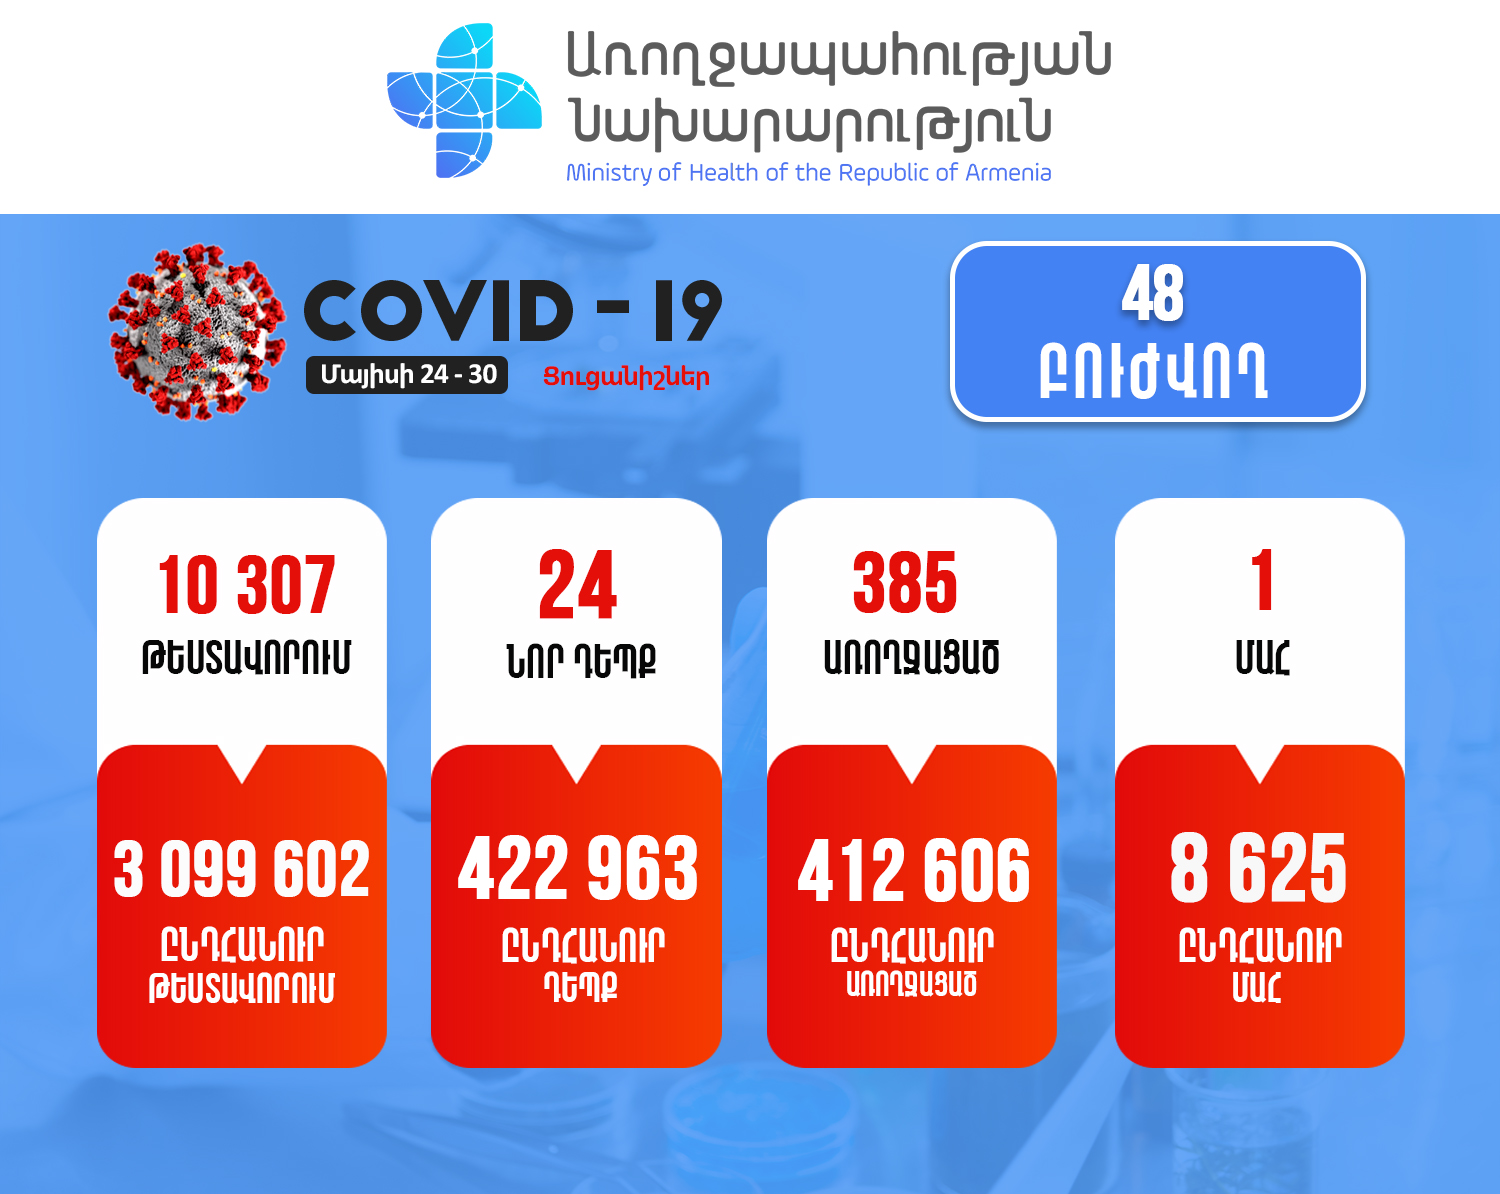 Հայաստանում վերջին մեկ շաբաթում հաստատվել է կորոնավիրուսի 24 նոր դեպք, 1 մահ